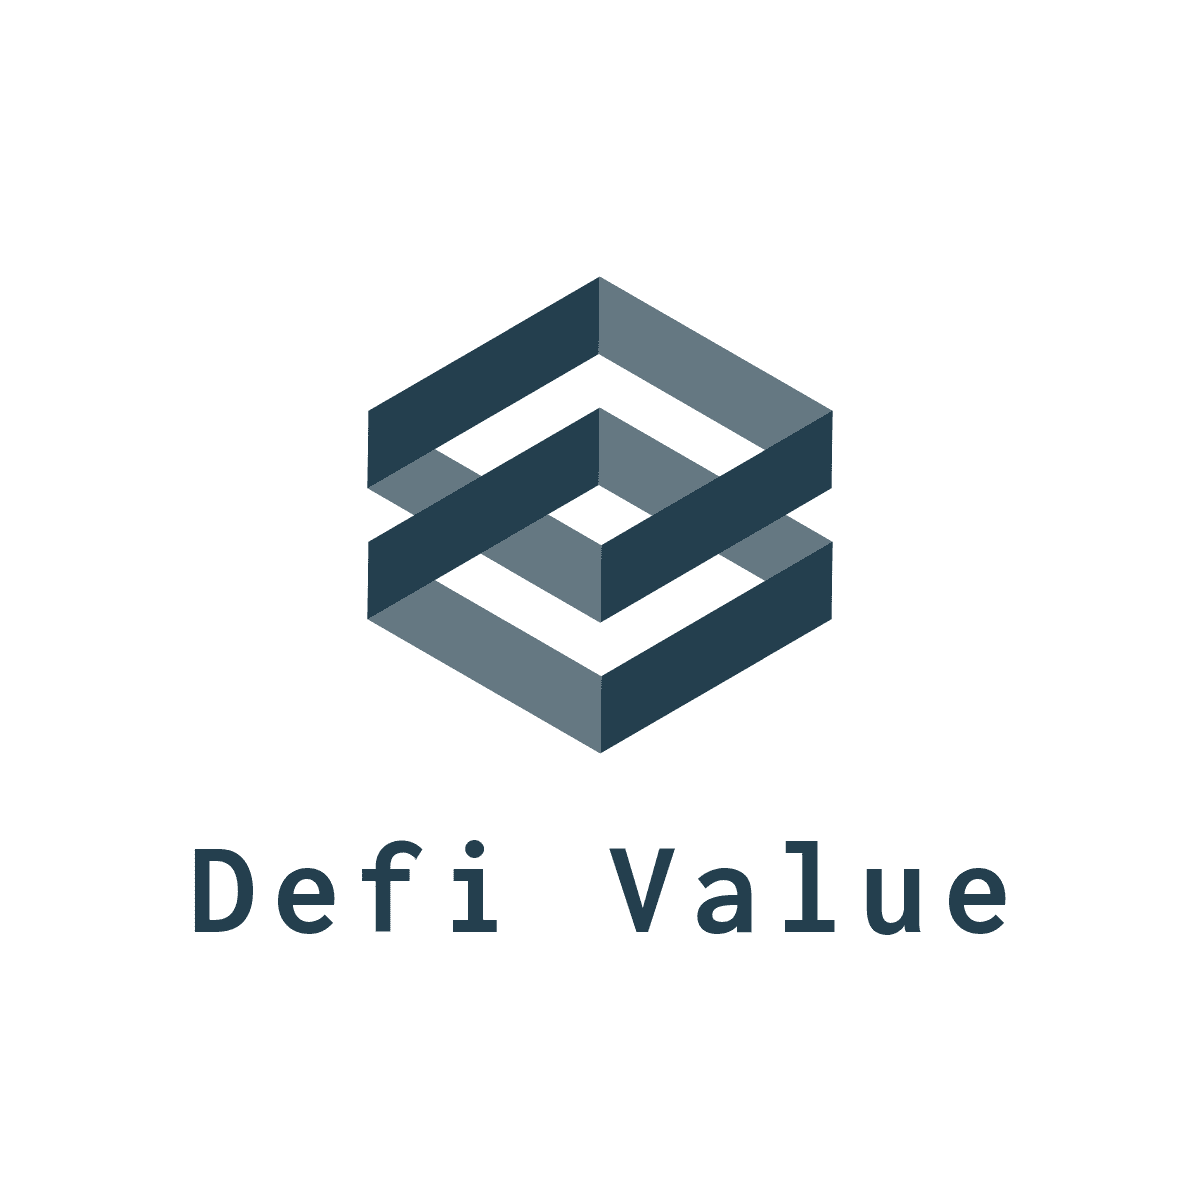 DeFi Value